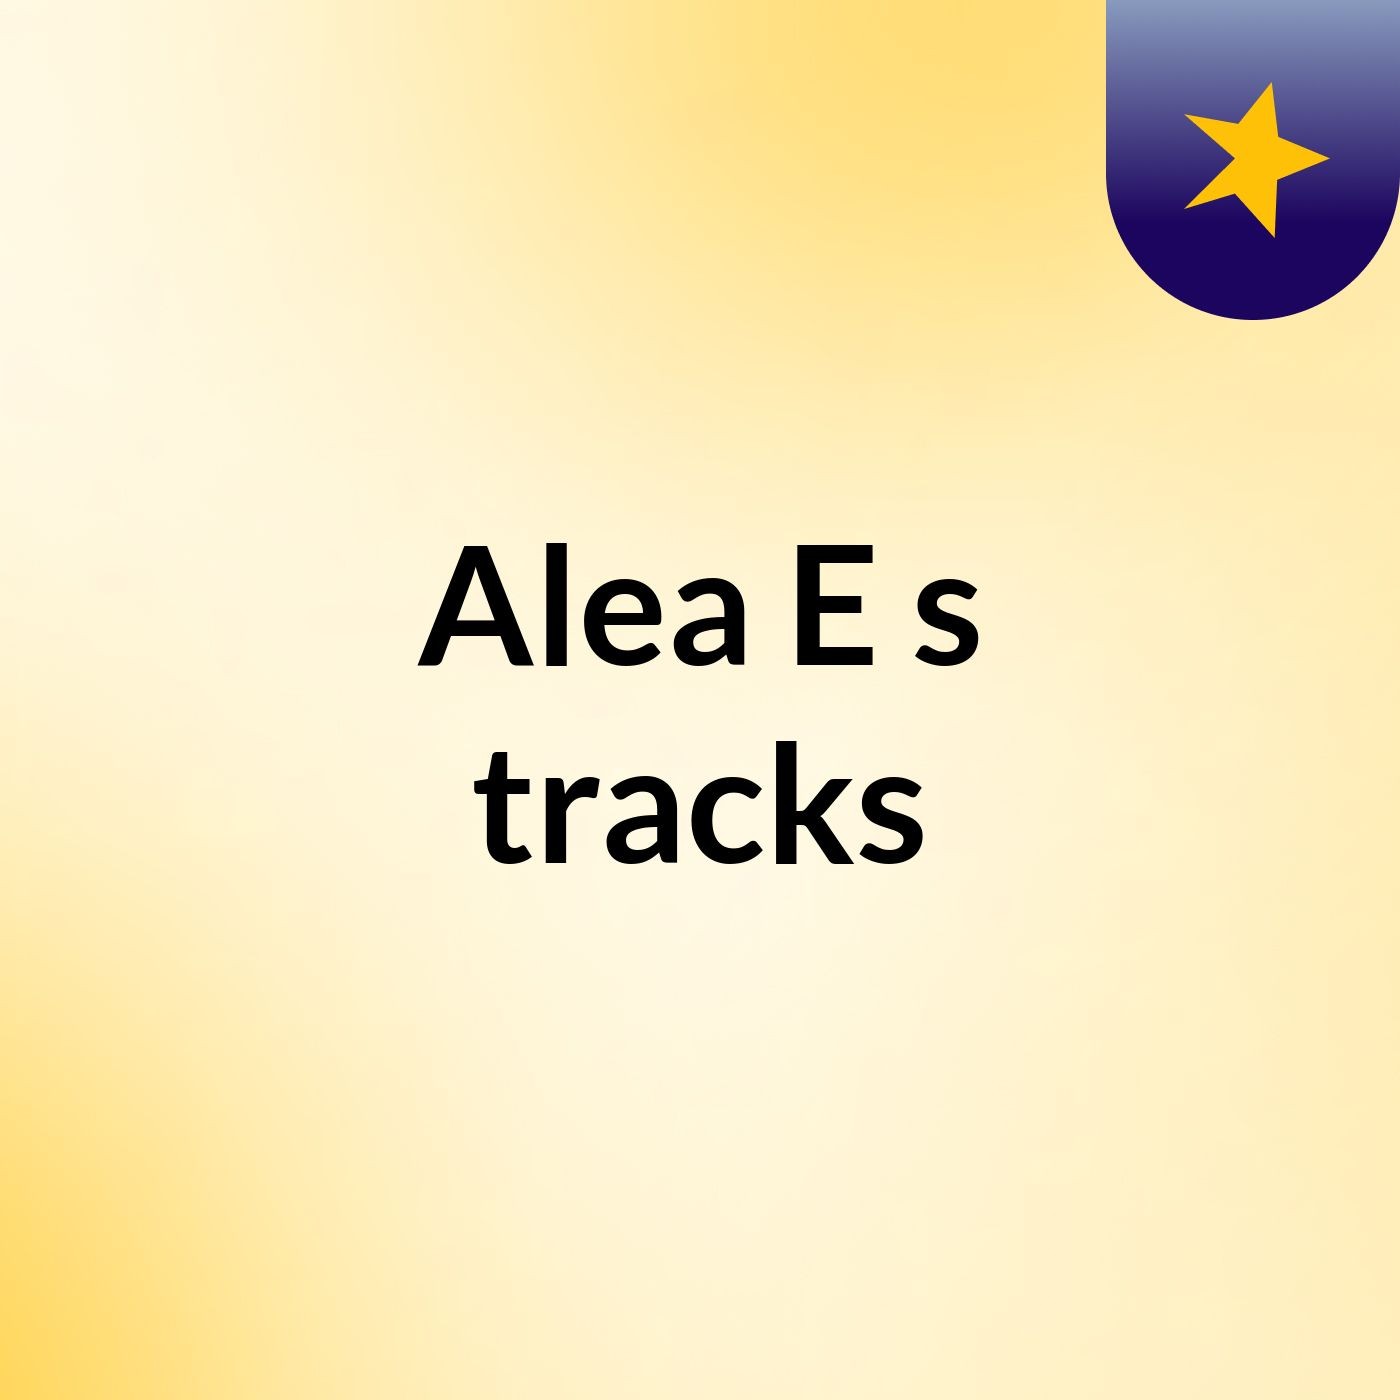 Alea E's tracks